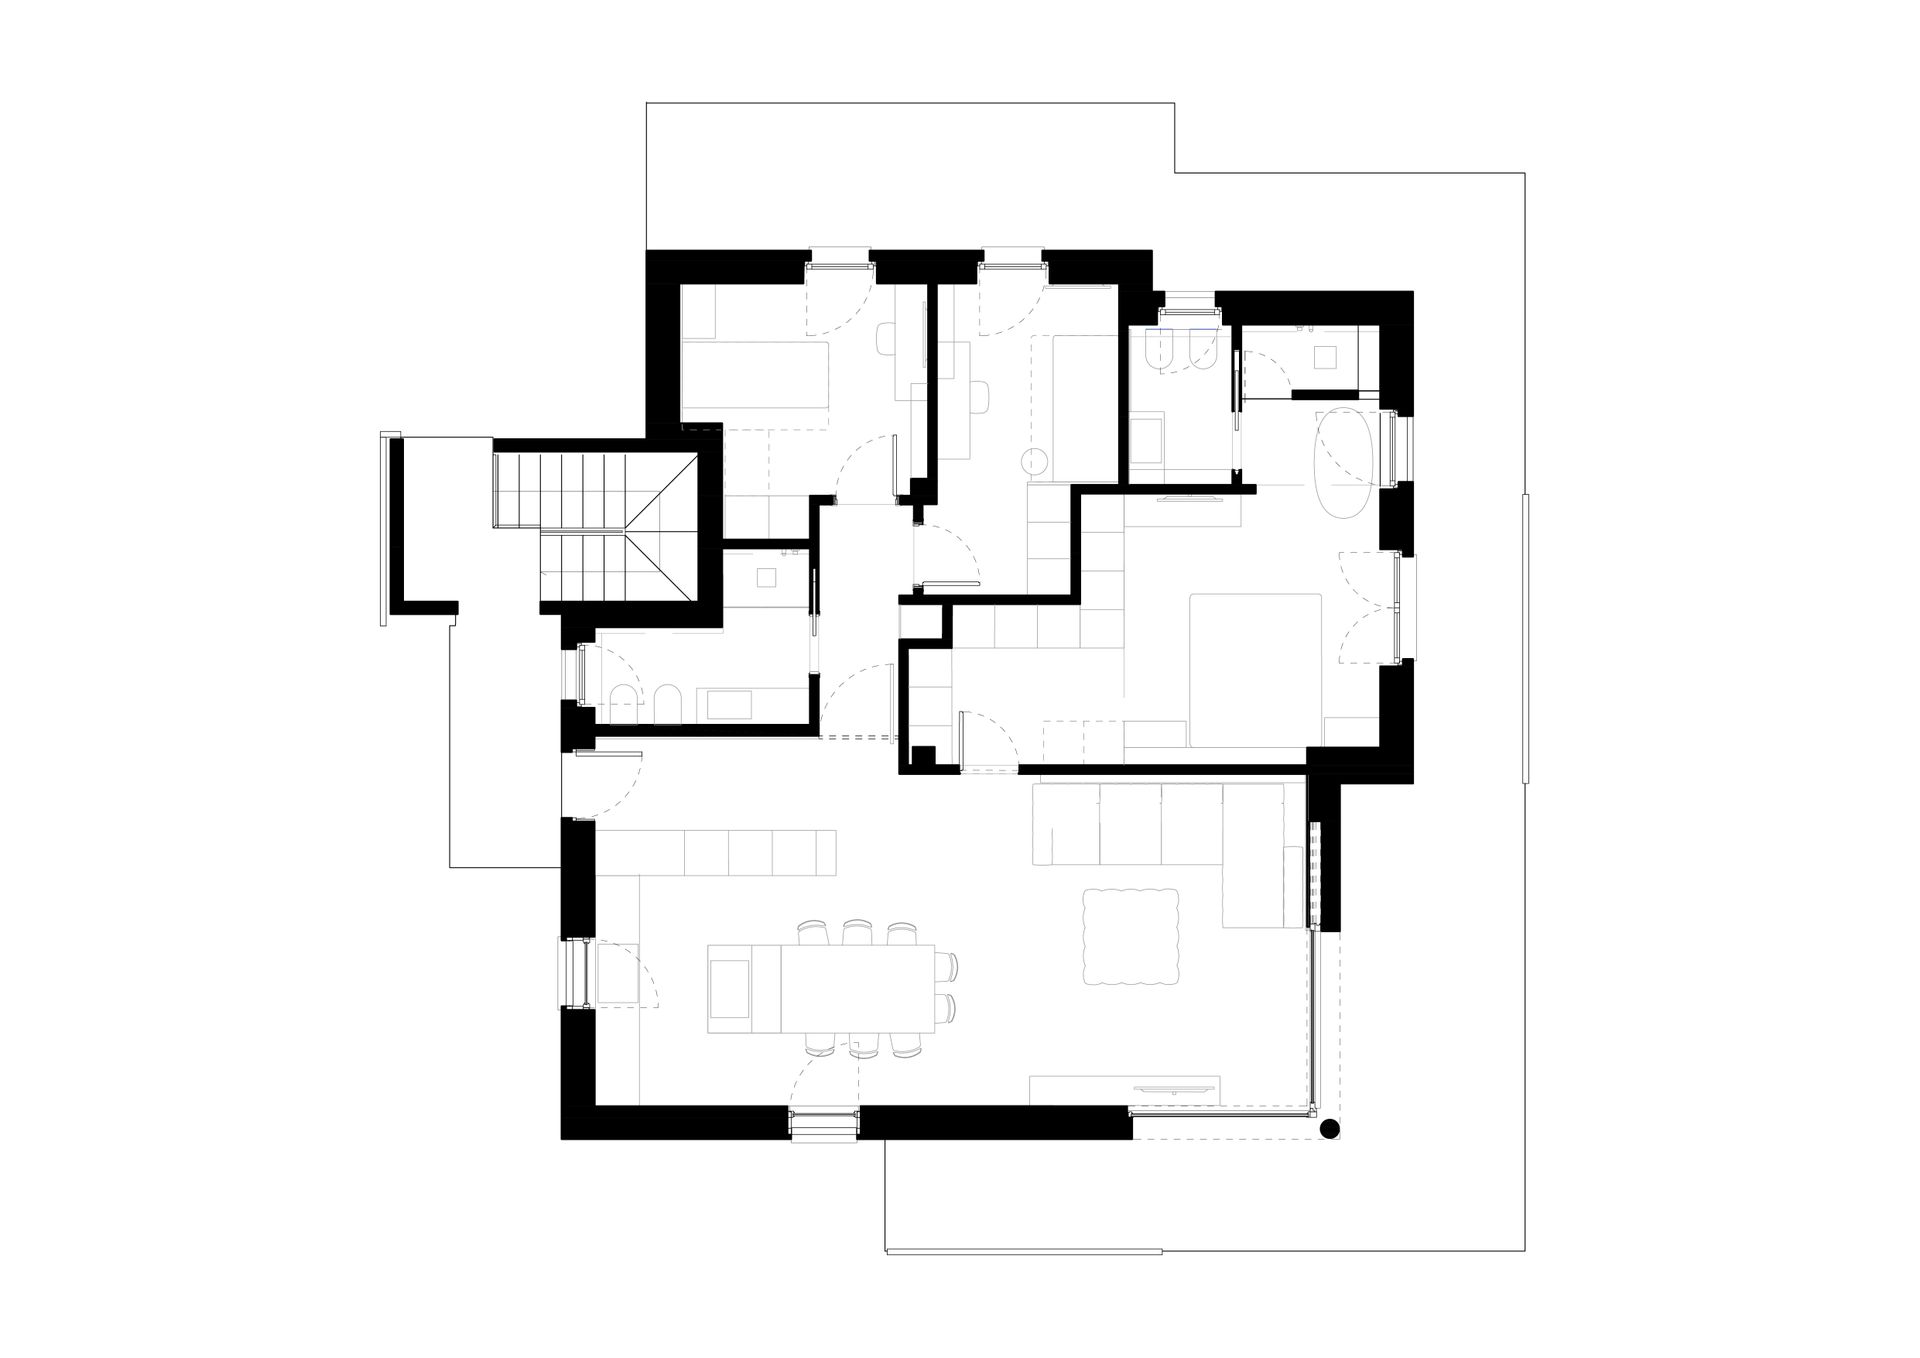 New apartment project, single-family house, convivium kitchen block, Ceppo di Grè. Officina Magisafi architecture design - floor plan